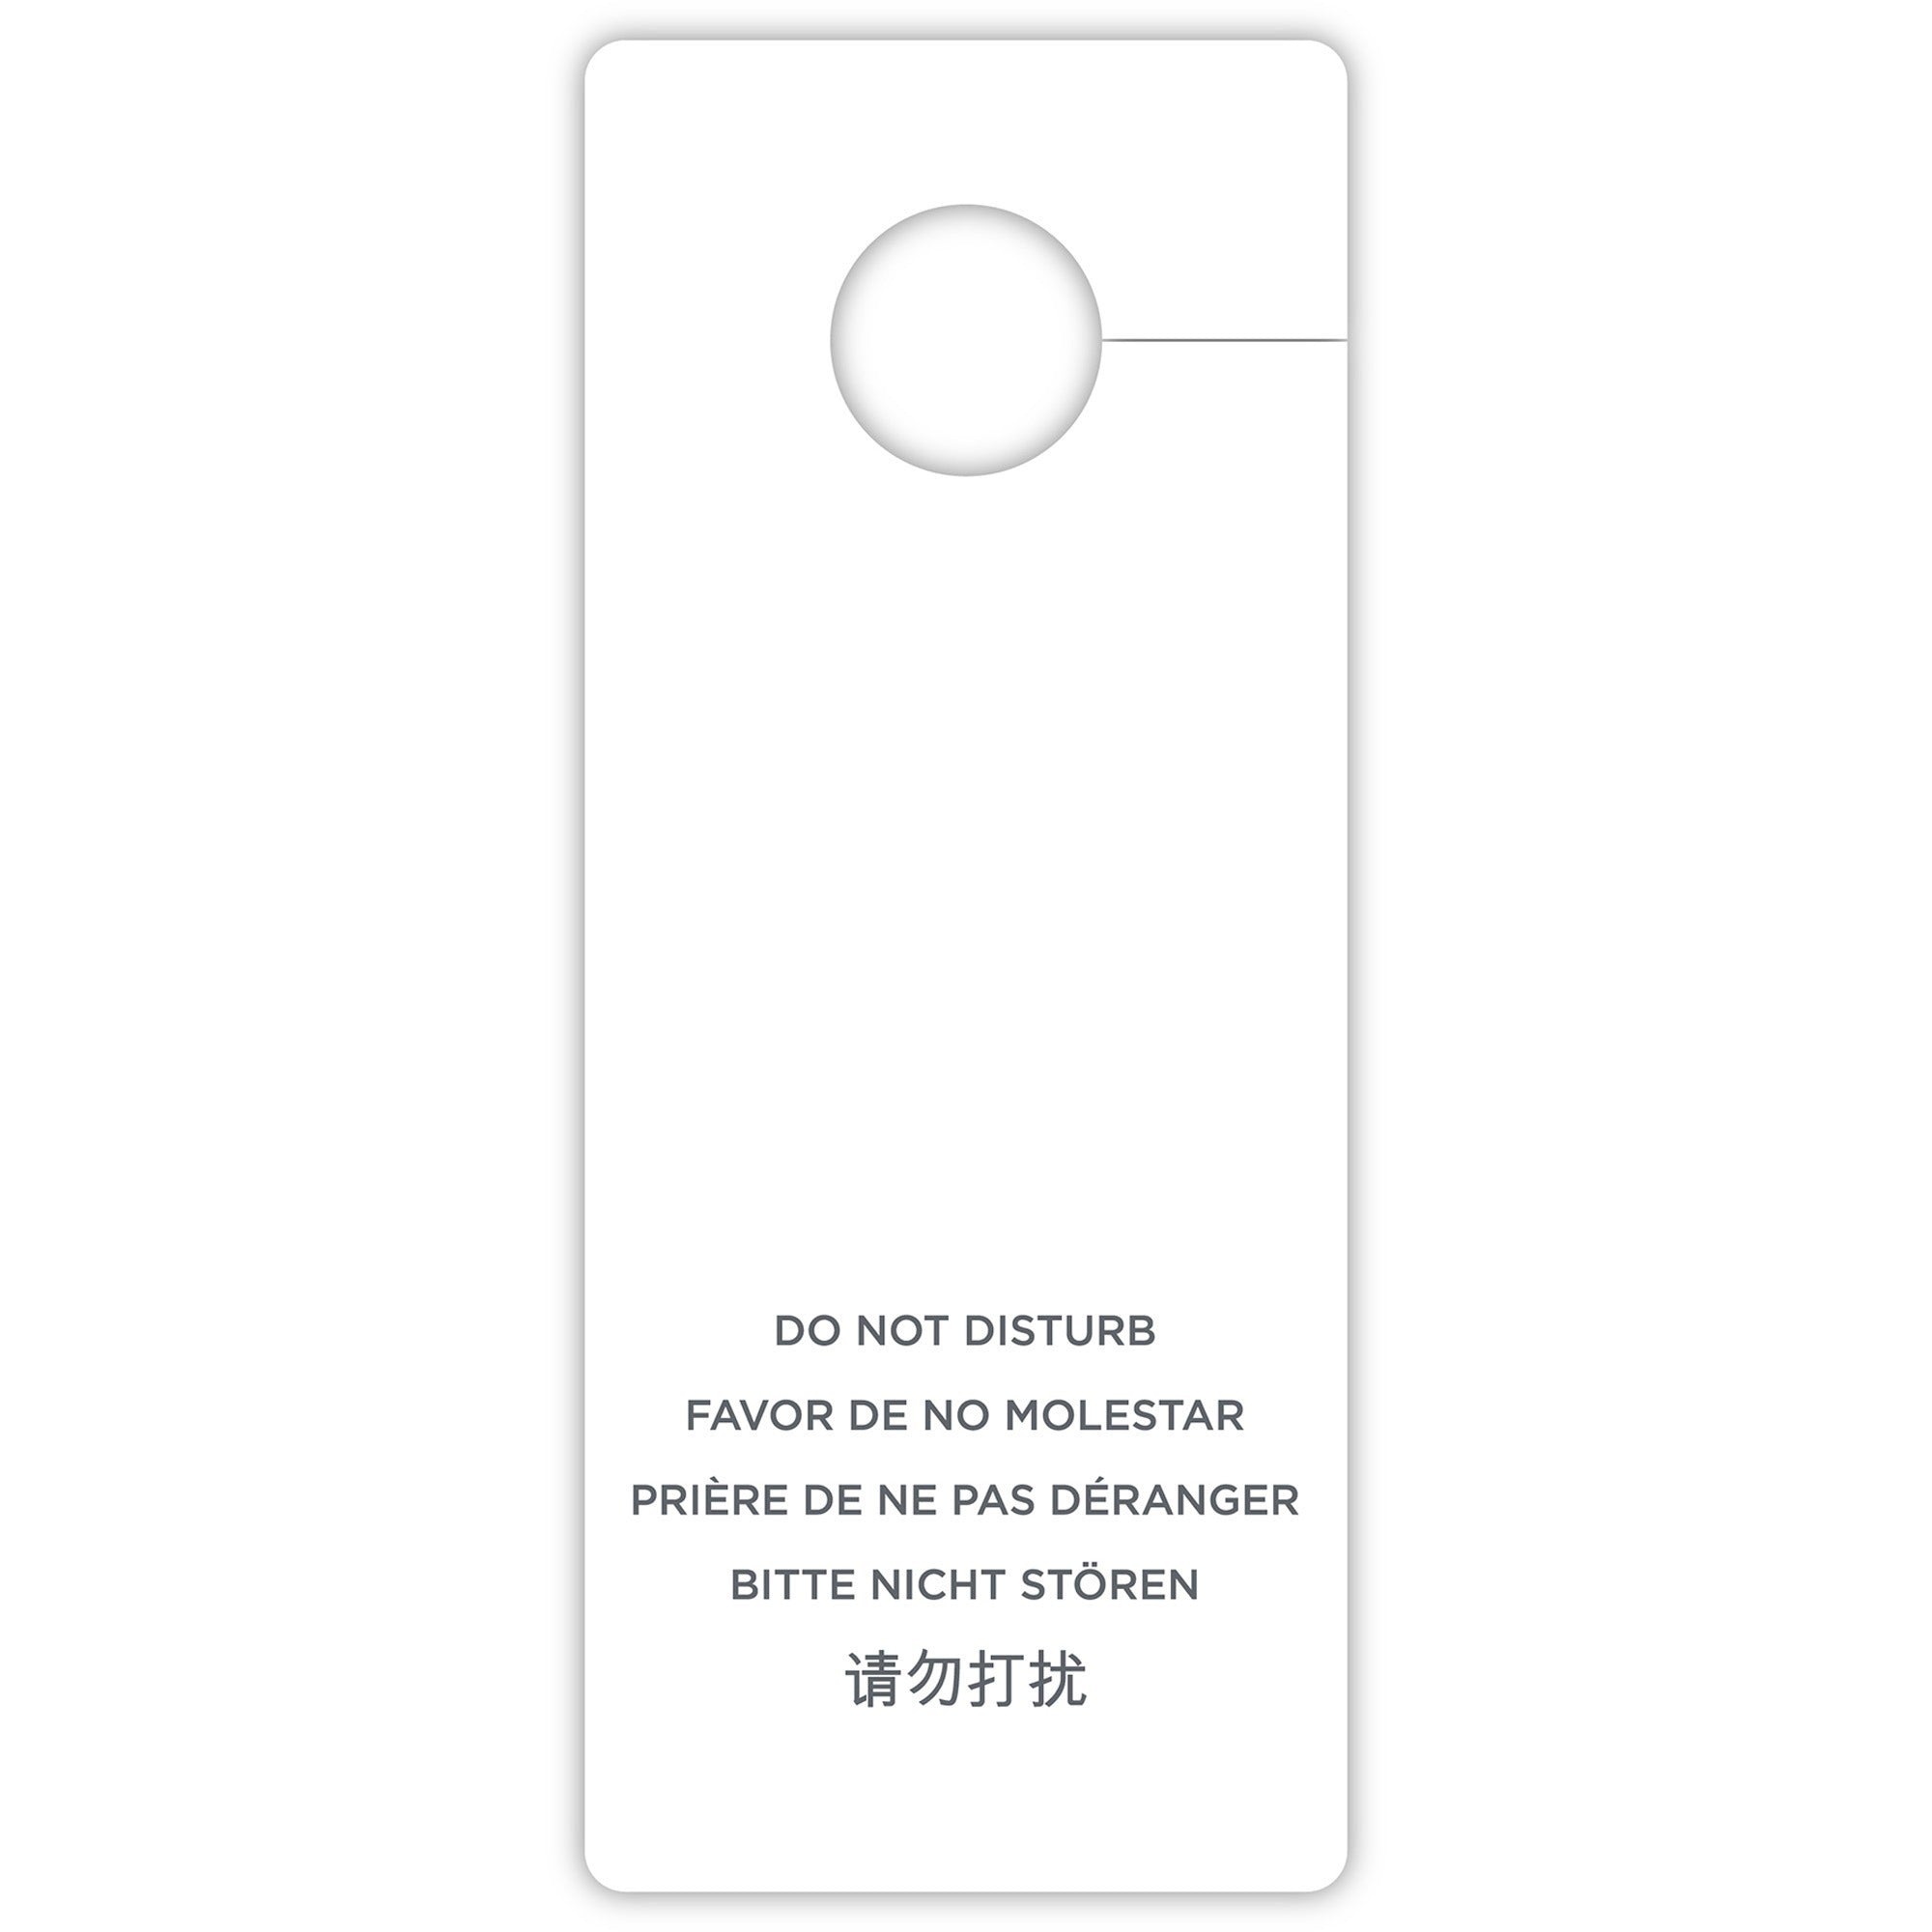 rdi-do-not-disturb-hang-sign-100-carton-do-not-disturb-print-message-3-width-x-8-height-rectangular-shape-hanging-hole-printable-white_cfpdndgen100 - 2